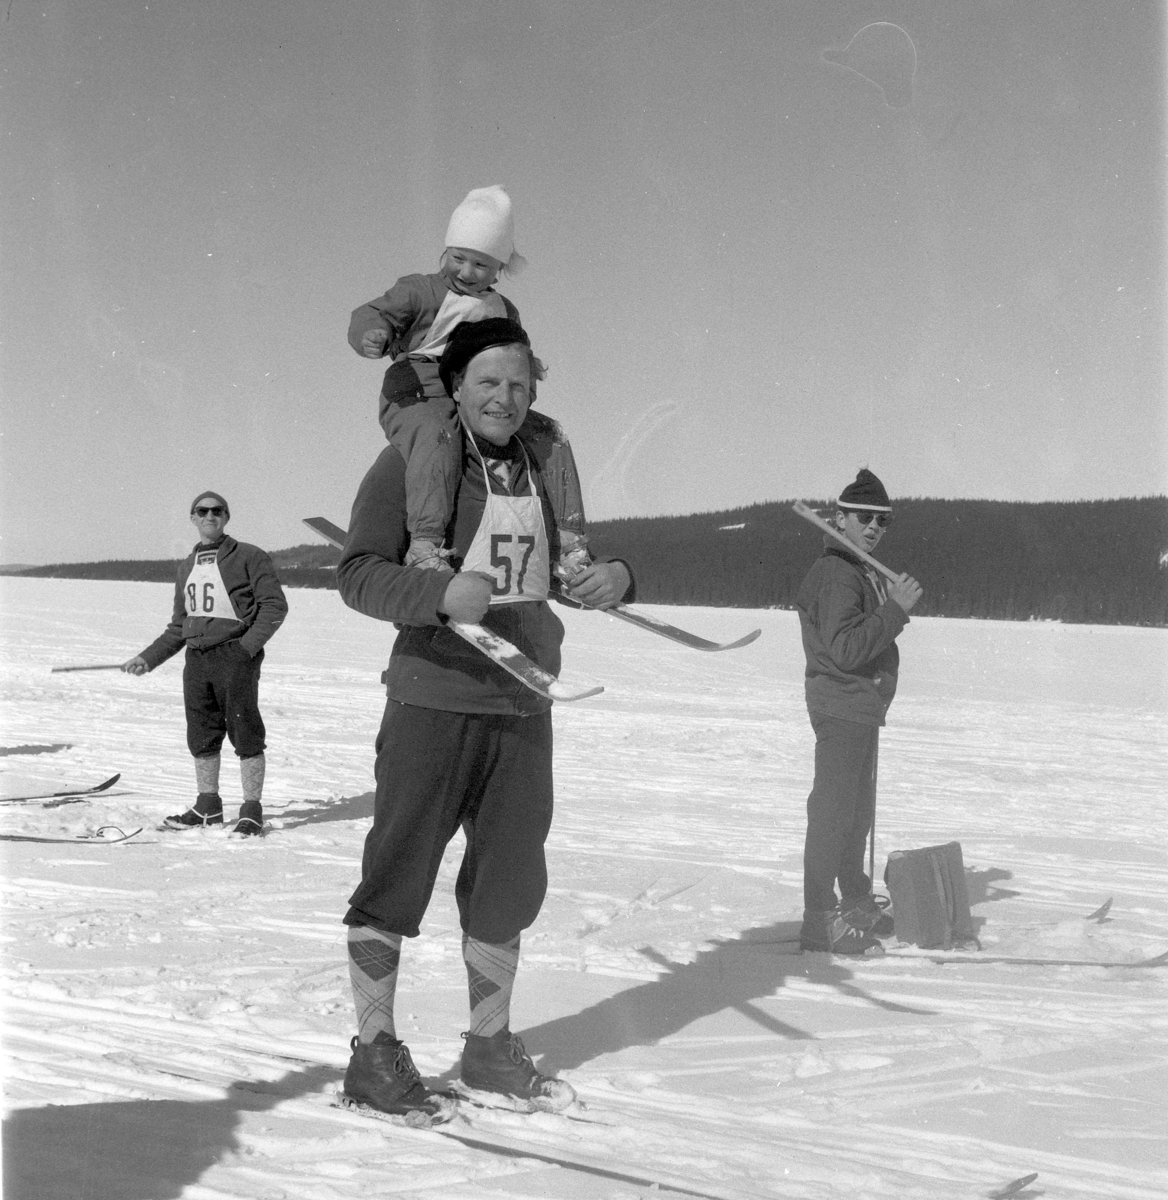 Pilkeskirennet, konkurranse med både skirenn og pilke konkurranse. Moelven. Vinter, snø. Moelven foto 1970. 